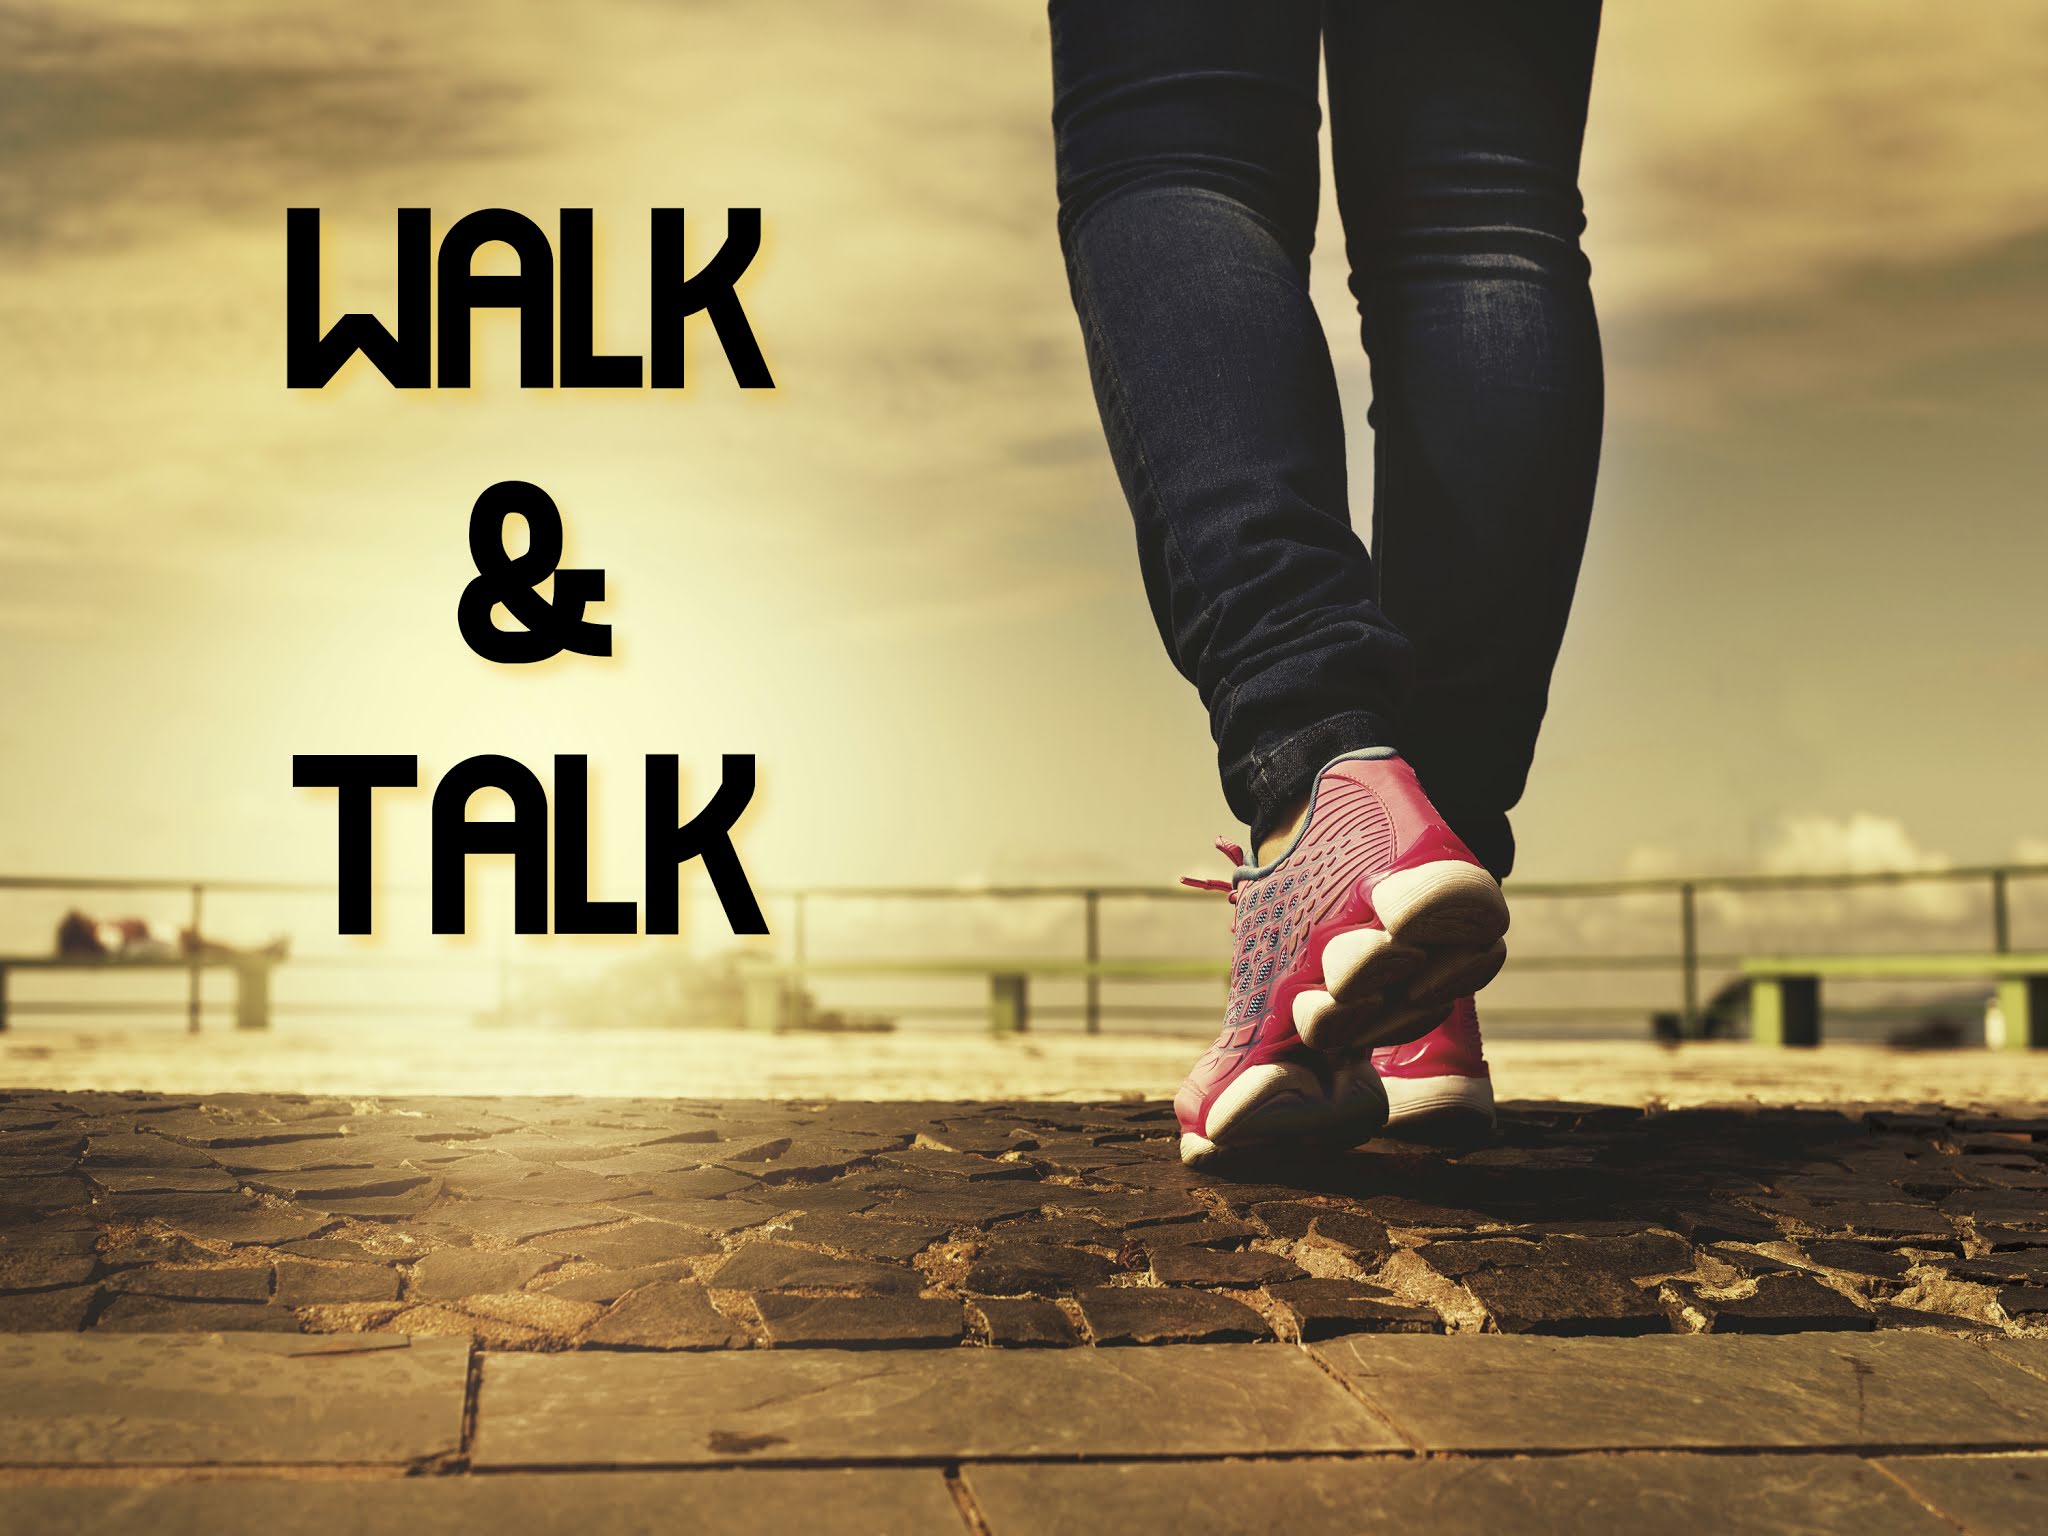 Walk talk ютуб. Walk talk. TECPRO walk & talk. Walk talk игра. Take Run talk картинки.